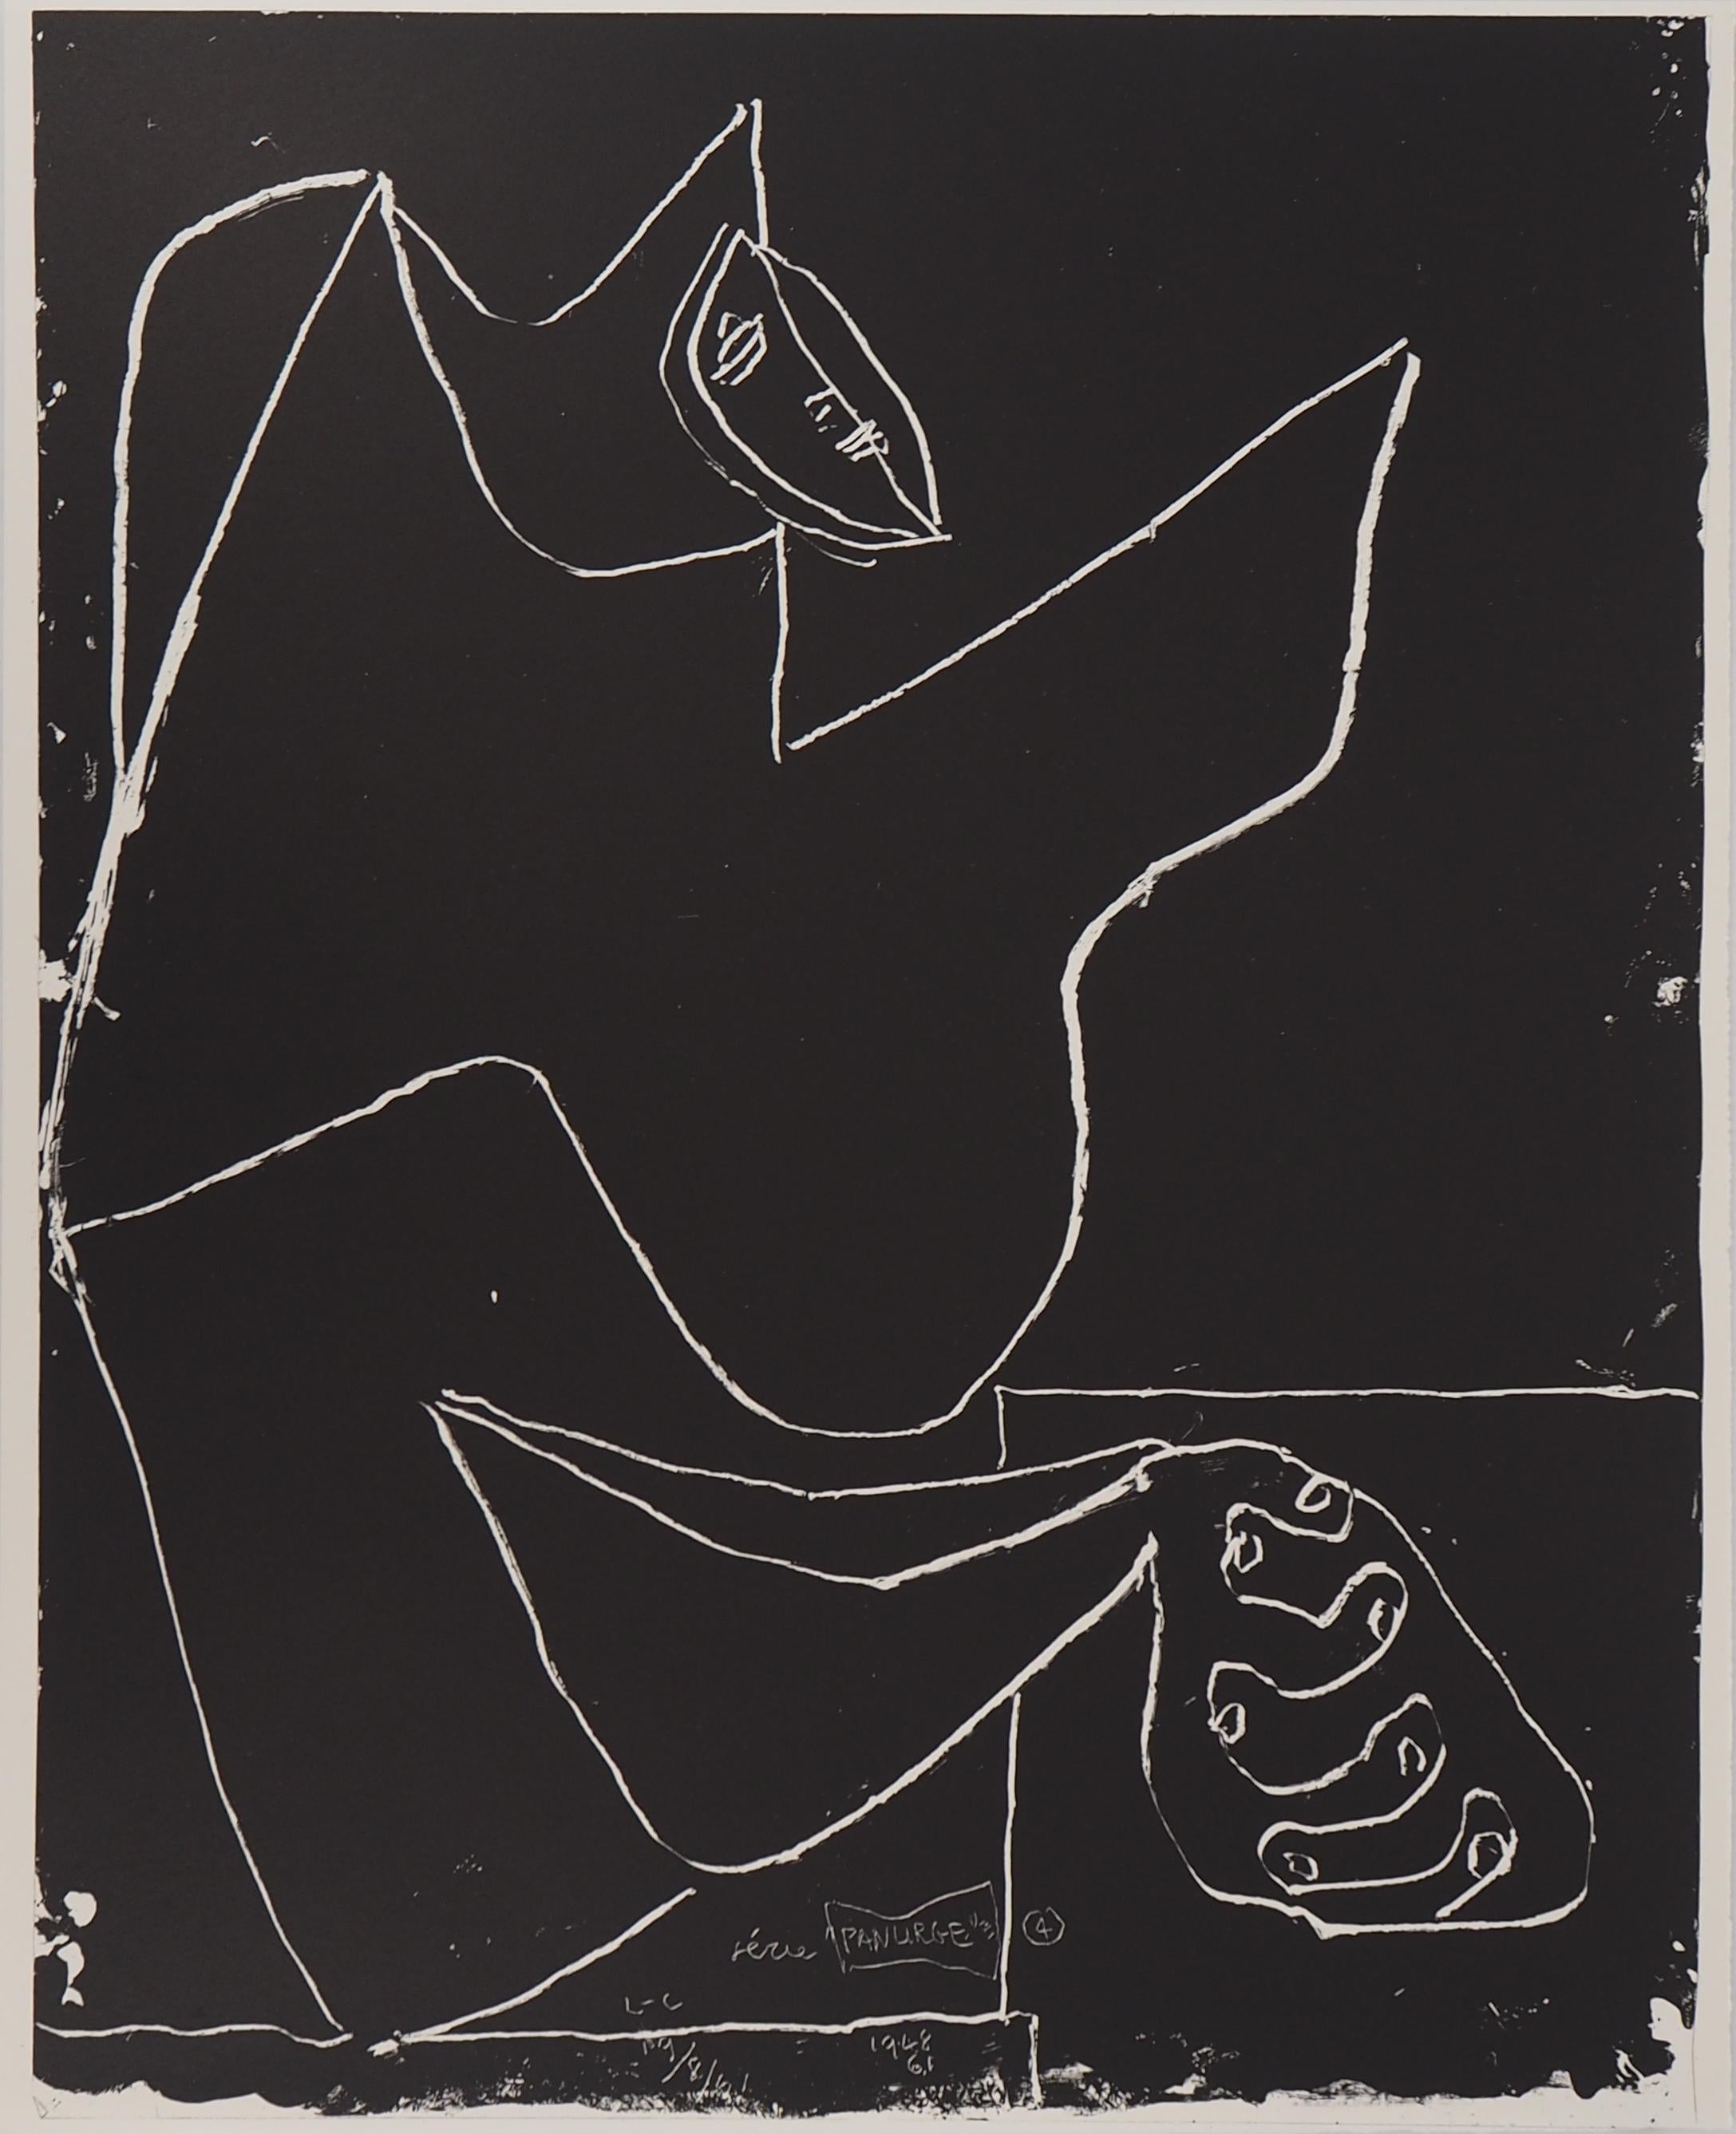 Le Corbusier Figurative Print - Hands and Dancer - Original Lithograph (Mourlot)